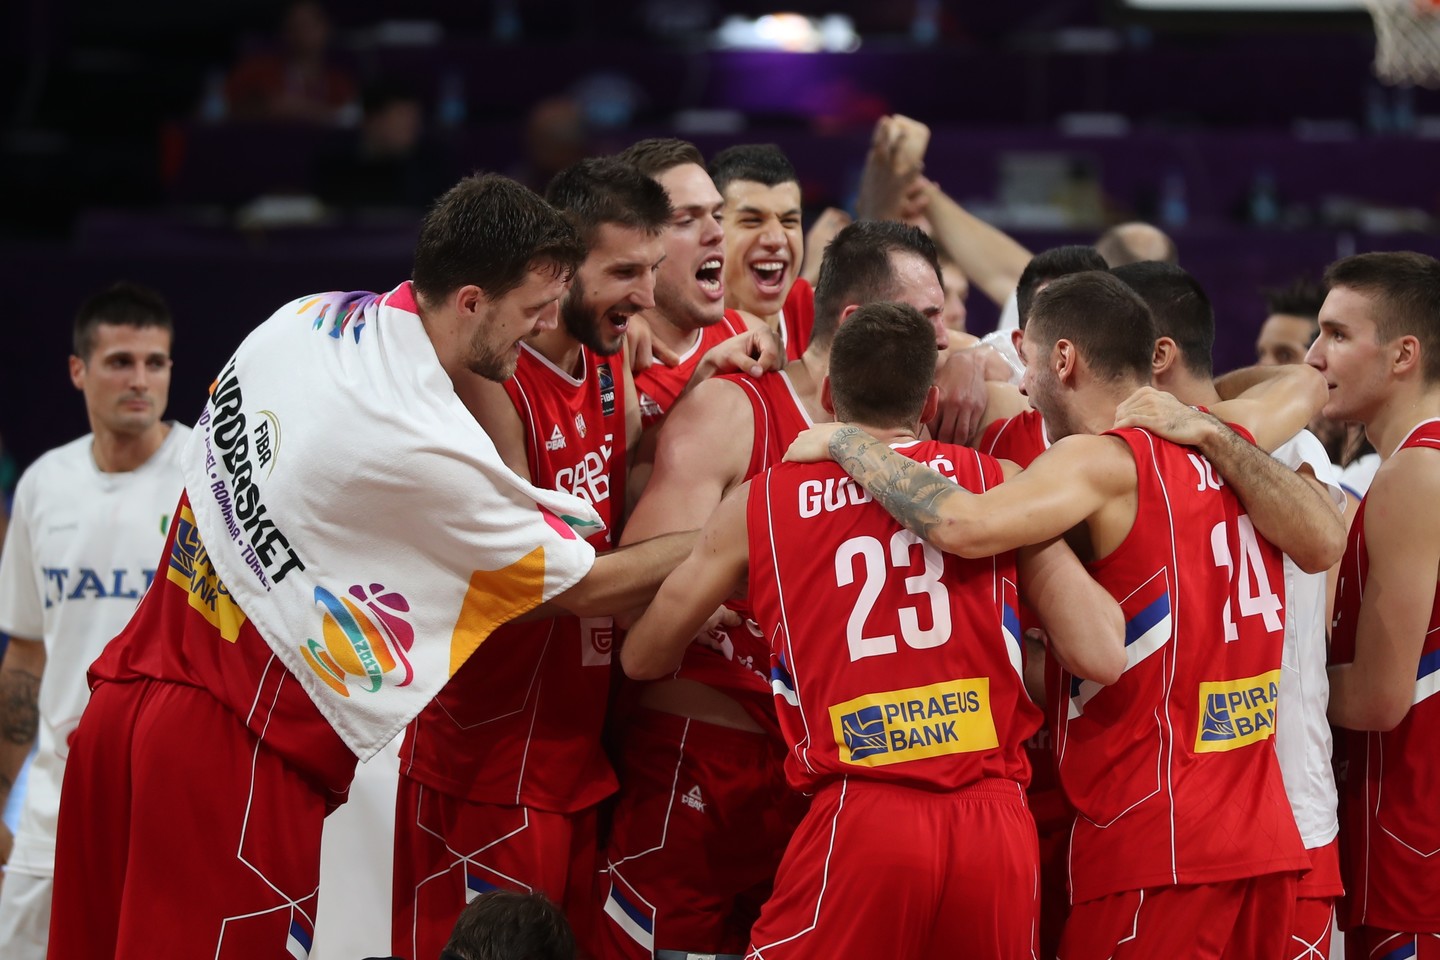  Serbija atrodė galingai, tačiau finale krito prieš slovėnus<br> AFP/Scanpix nuotr.